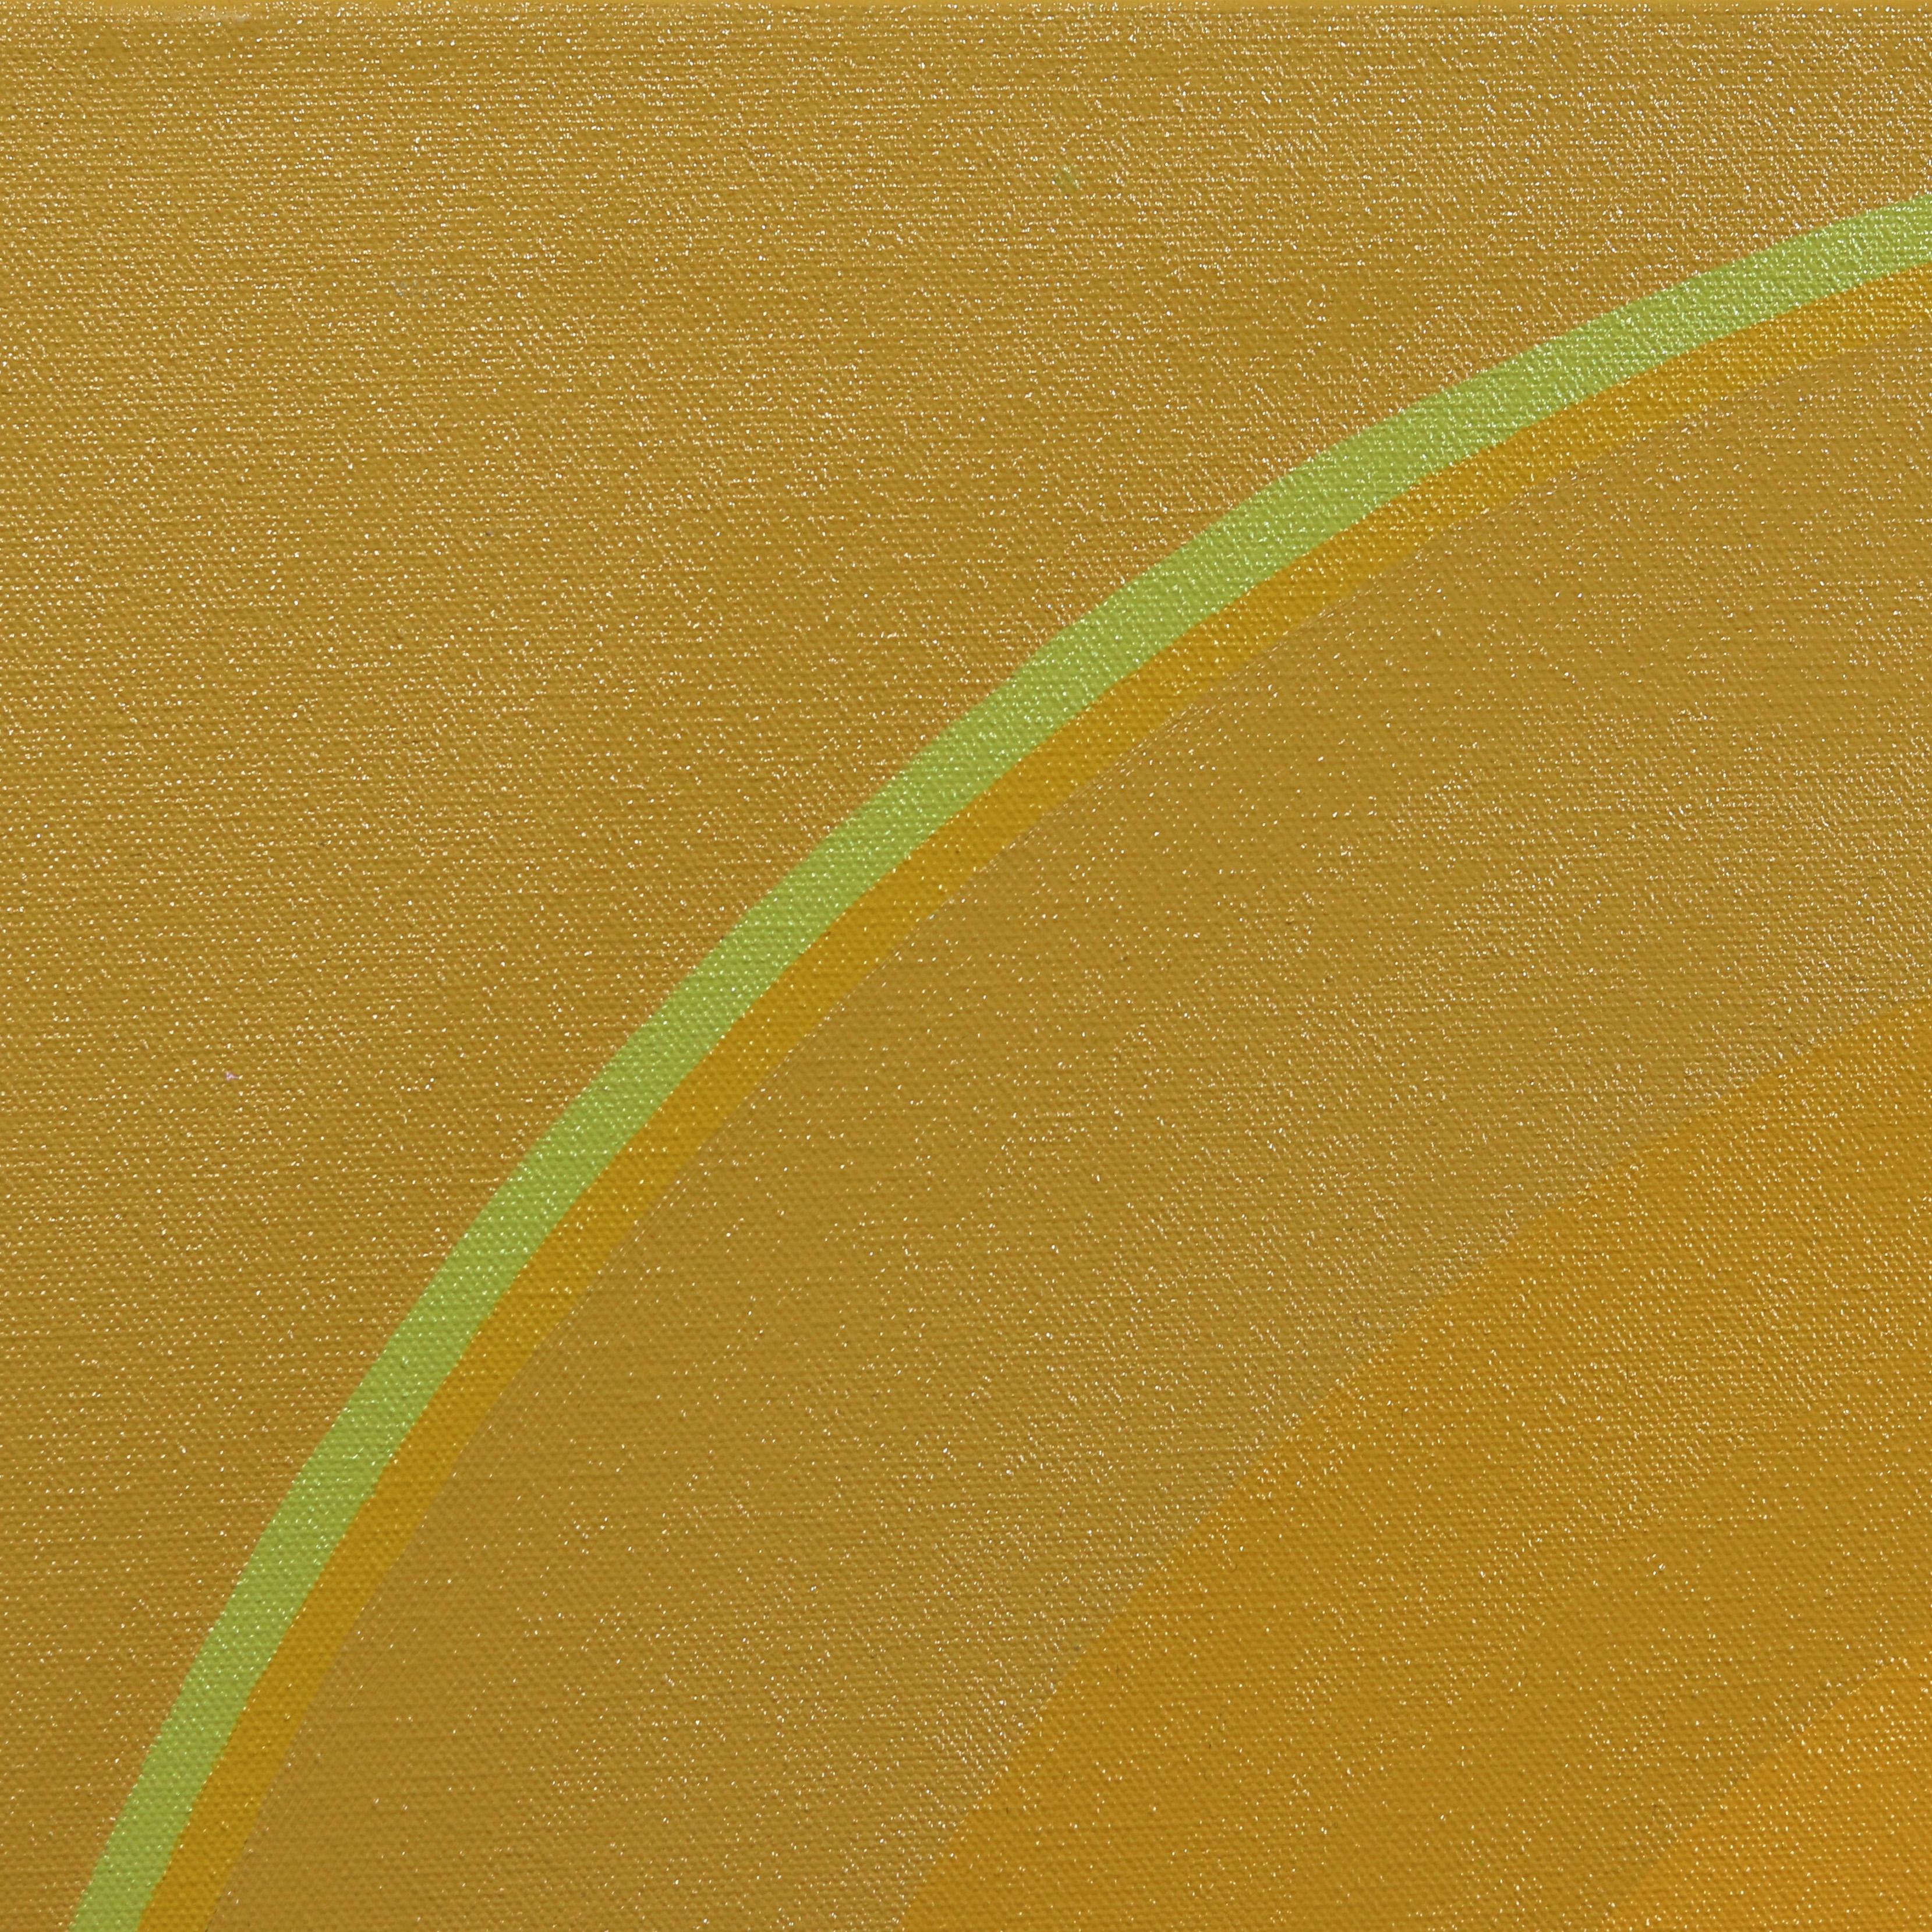 Der britische Künstler Paul Westacott lässt sich von der lebendigen kalifornischen Landschaft inspirieren und schafft originelle abstrakte Kunstwerke, die eine harmonische Mischung aus minimalistischer Geometrie und kräftigen Farben darstellen.